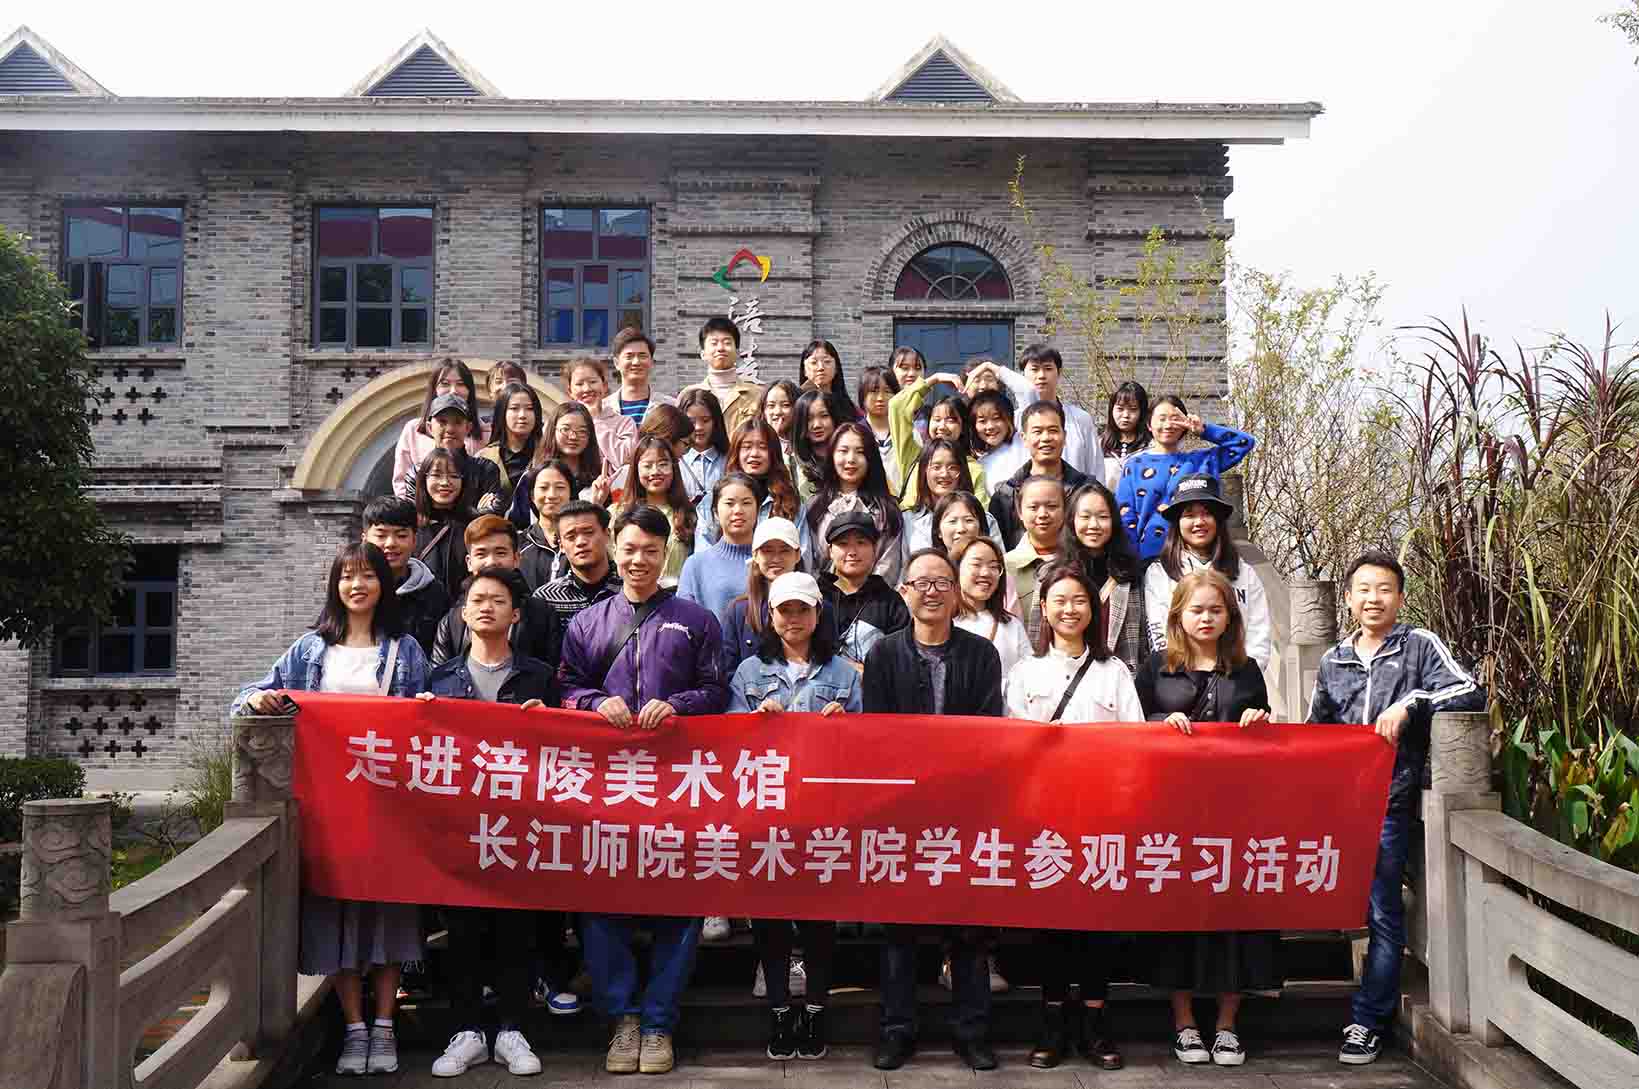 走进涪陵美术馆——长江师院美术学院学生参观学习活动